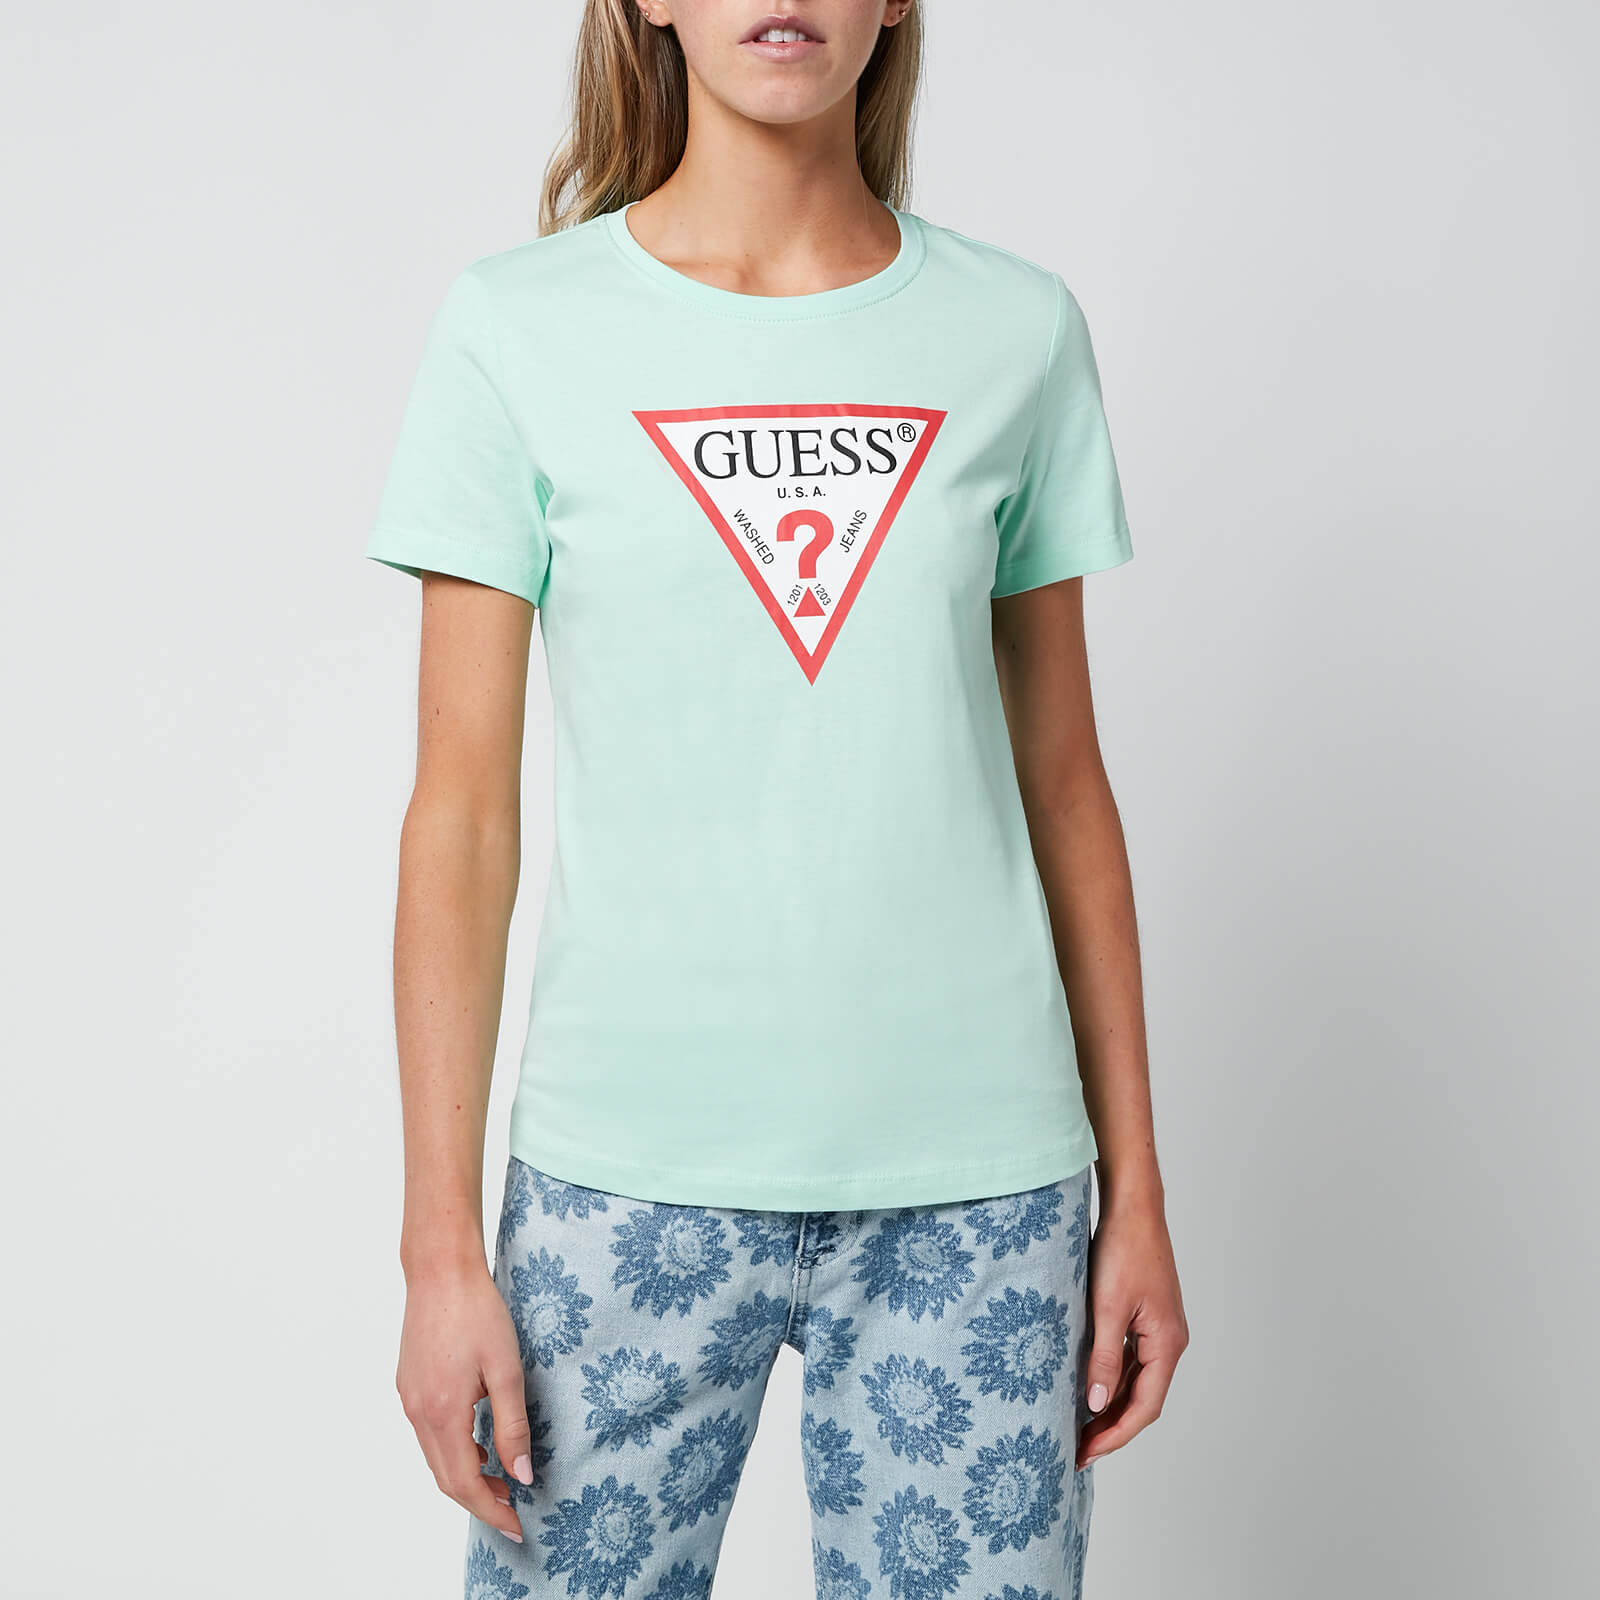 Guess Women's Short Sleeve Crewneck Original T-Shirt - Aqua Breeze - XS